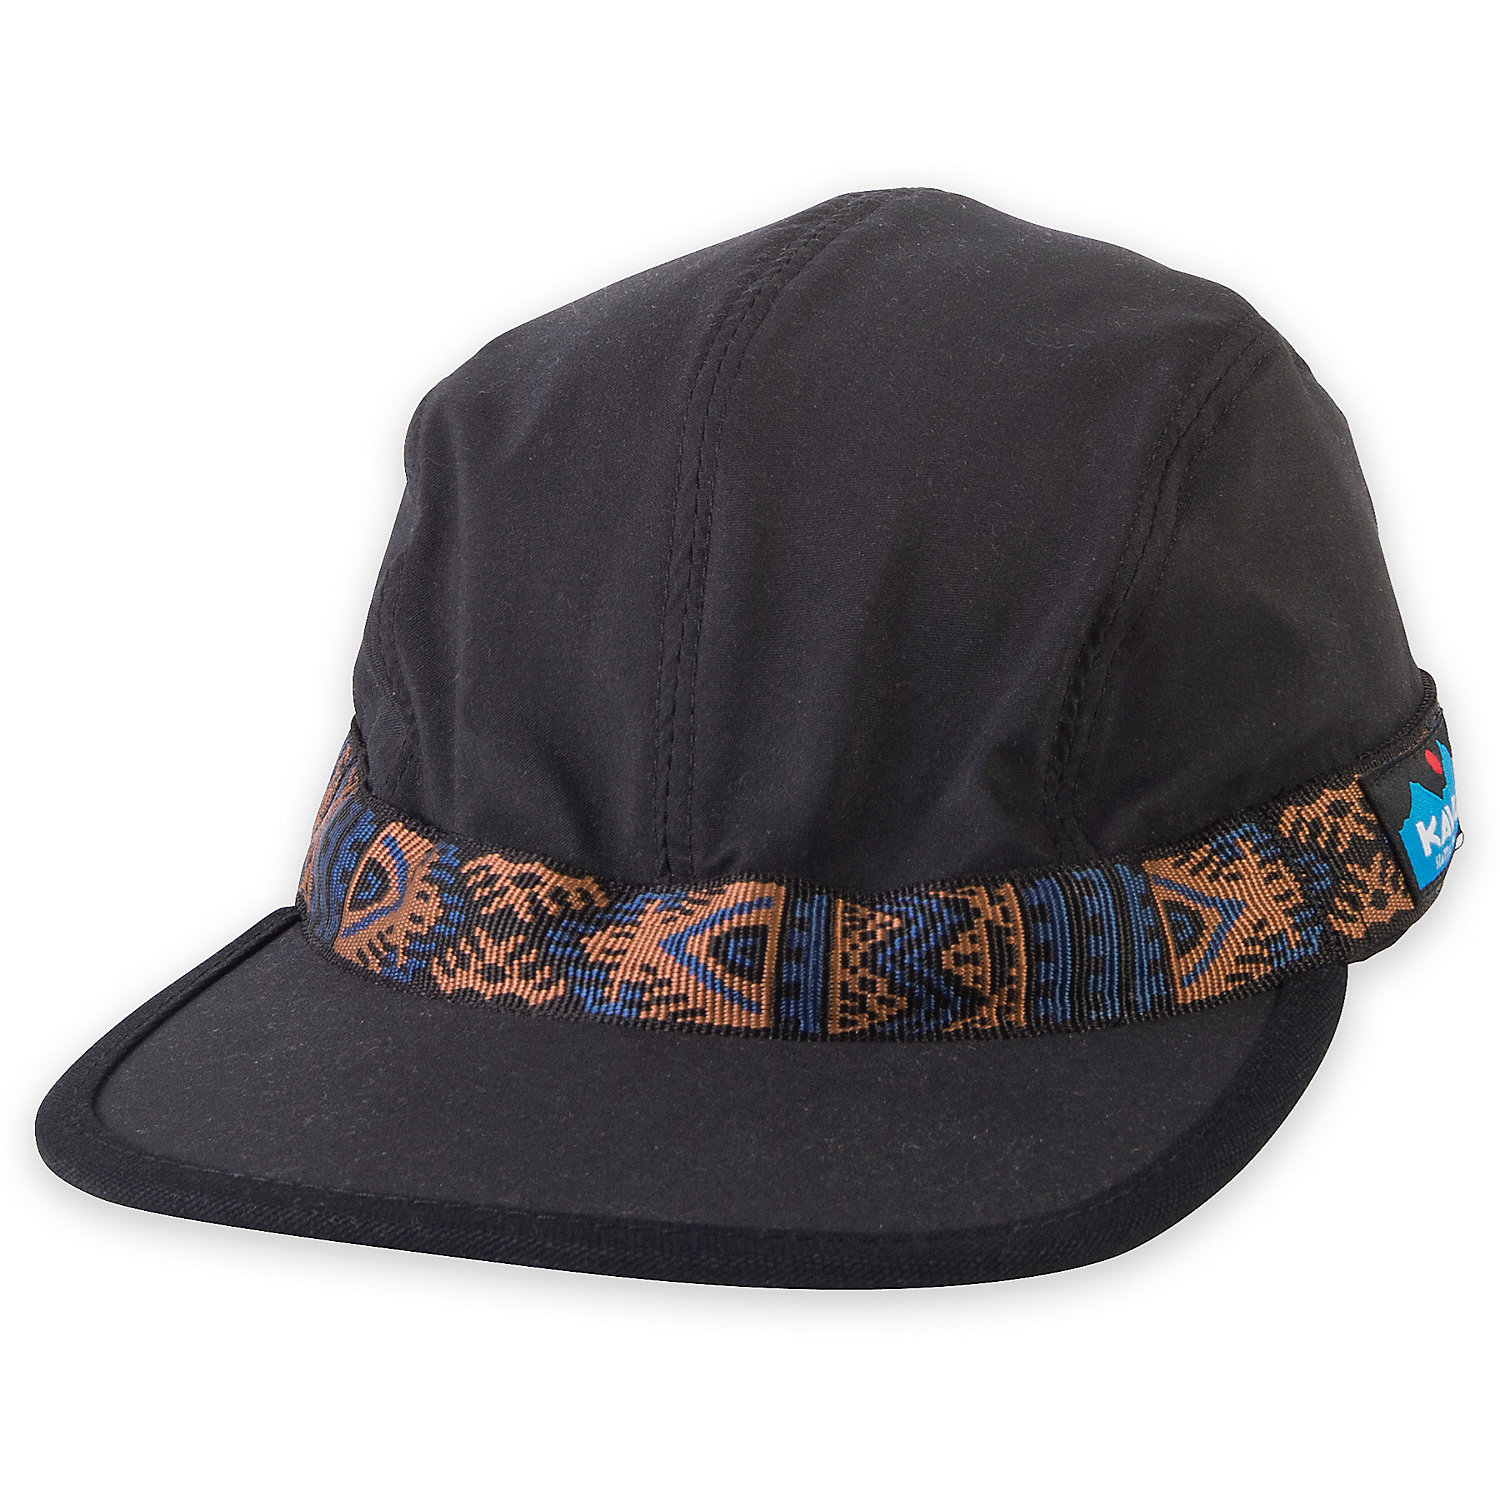 KAVU Synthetic Strapcap Hat